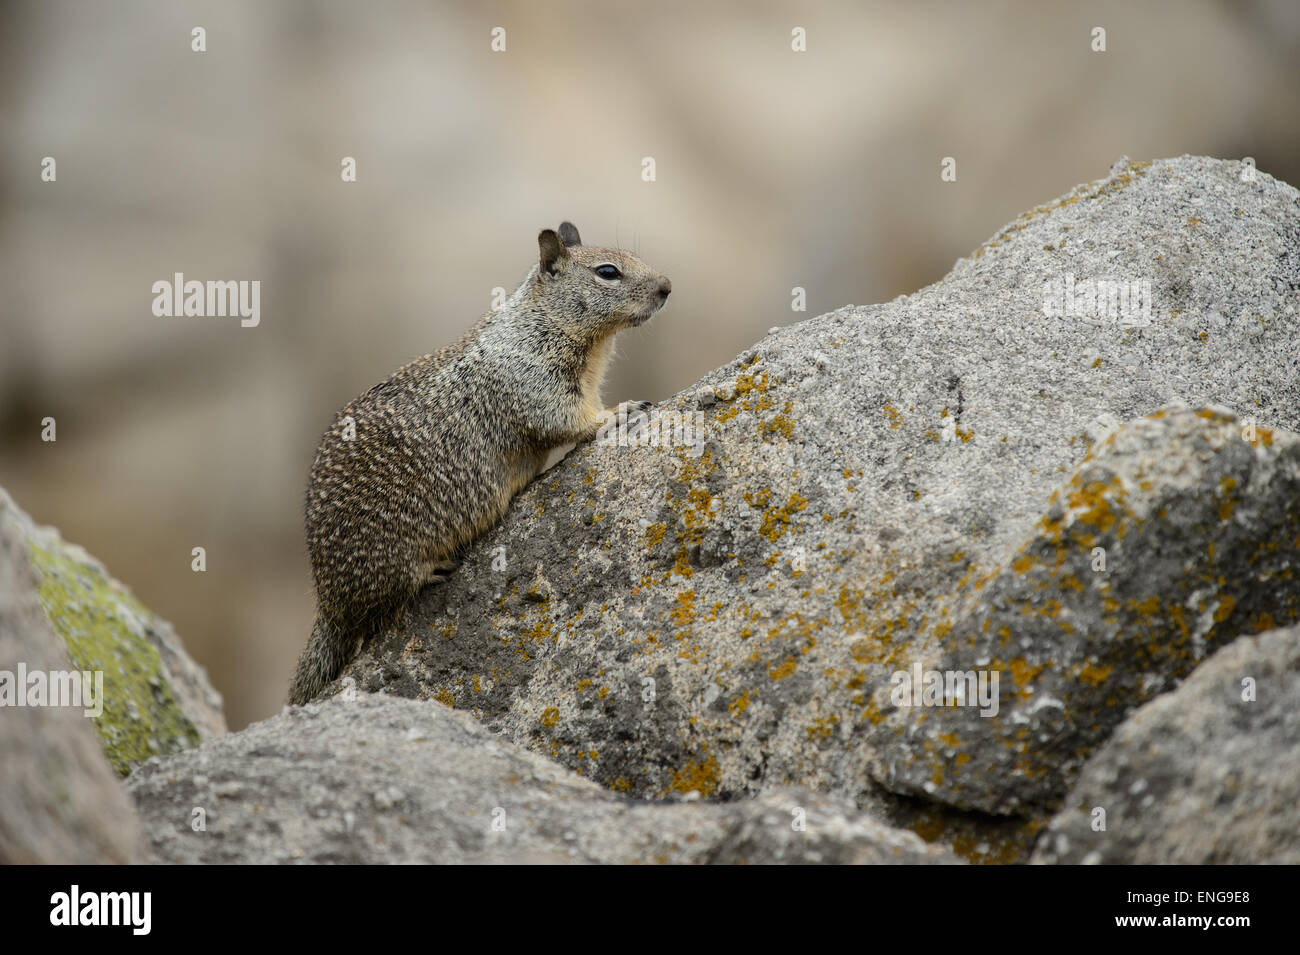 La massa della California scoiattolo (Otospermophilus beecheyi) sulle rocce vicino alla costa di Monterey, California, Stati Uniti d'America Foto Stock